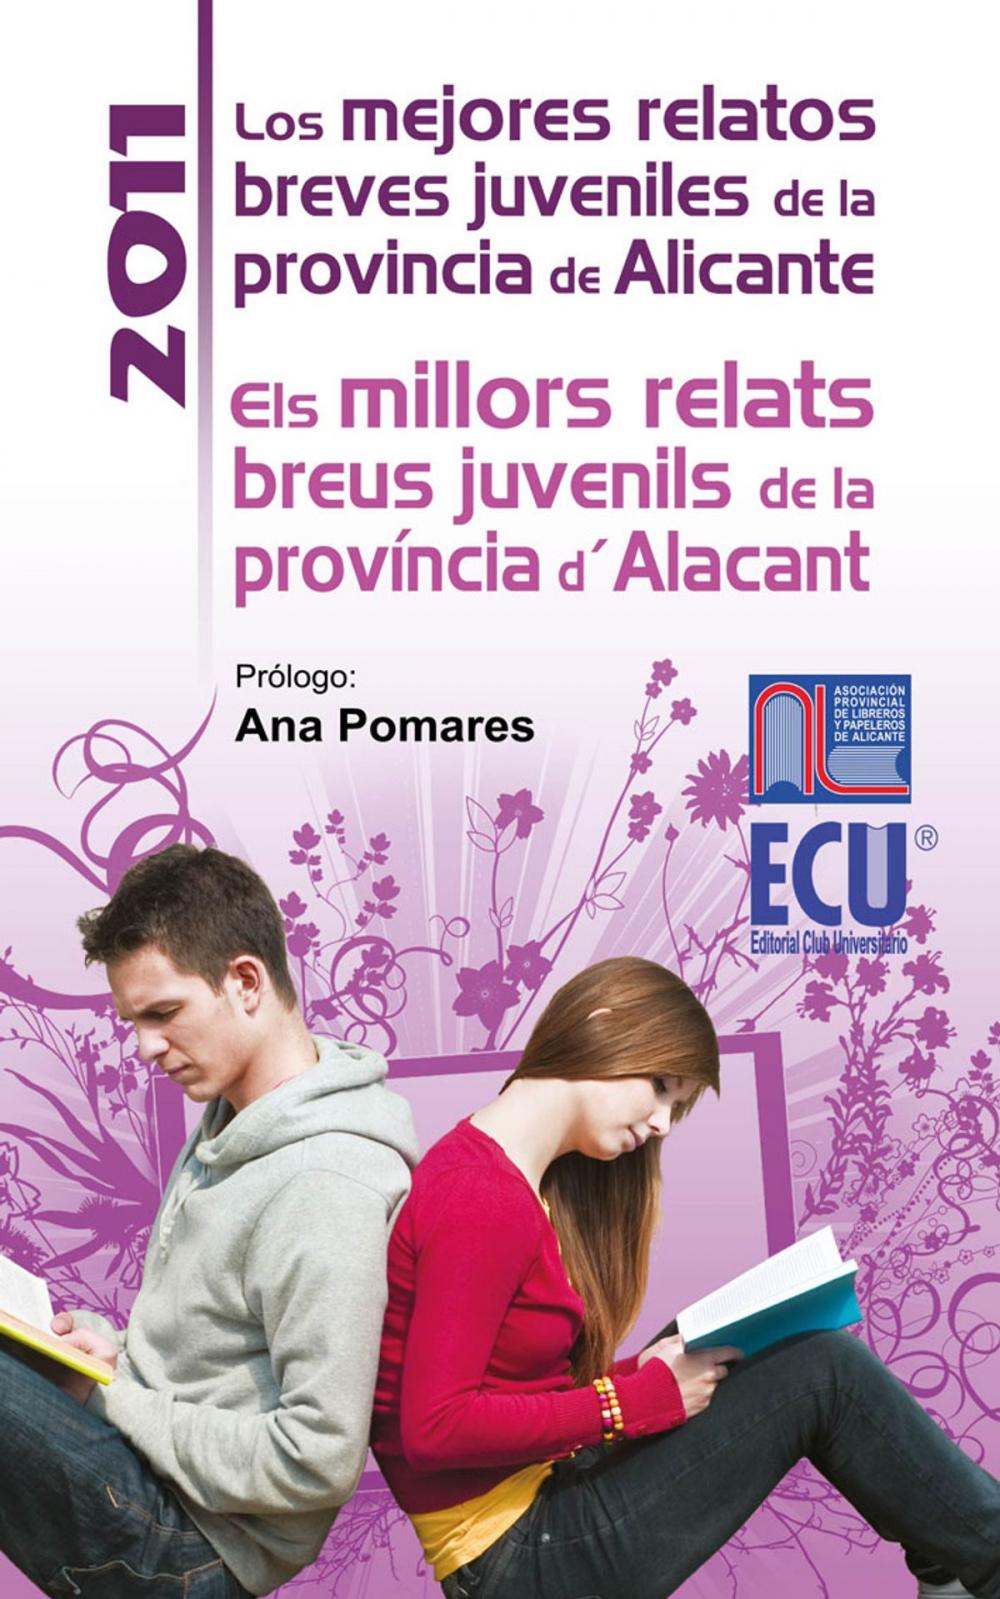 Big bigCover of Los mejores relatos breves juveniles de la provincia de Alicante 2011